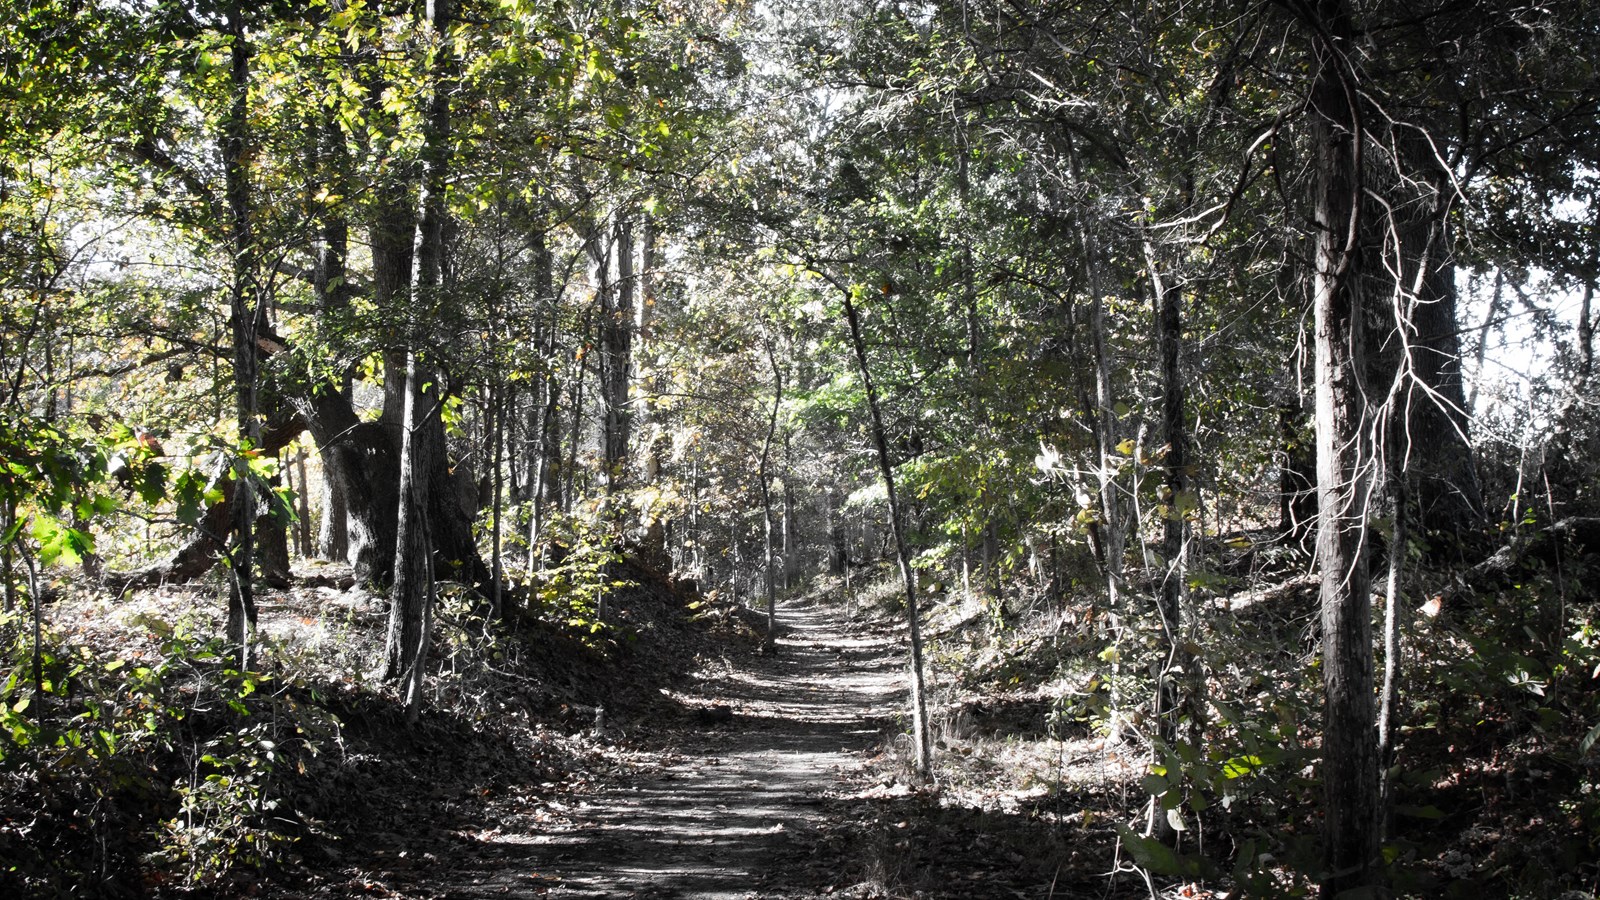 A trail leads through a dense wood.